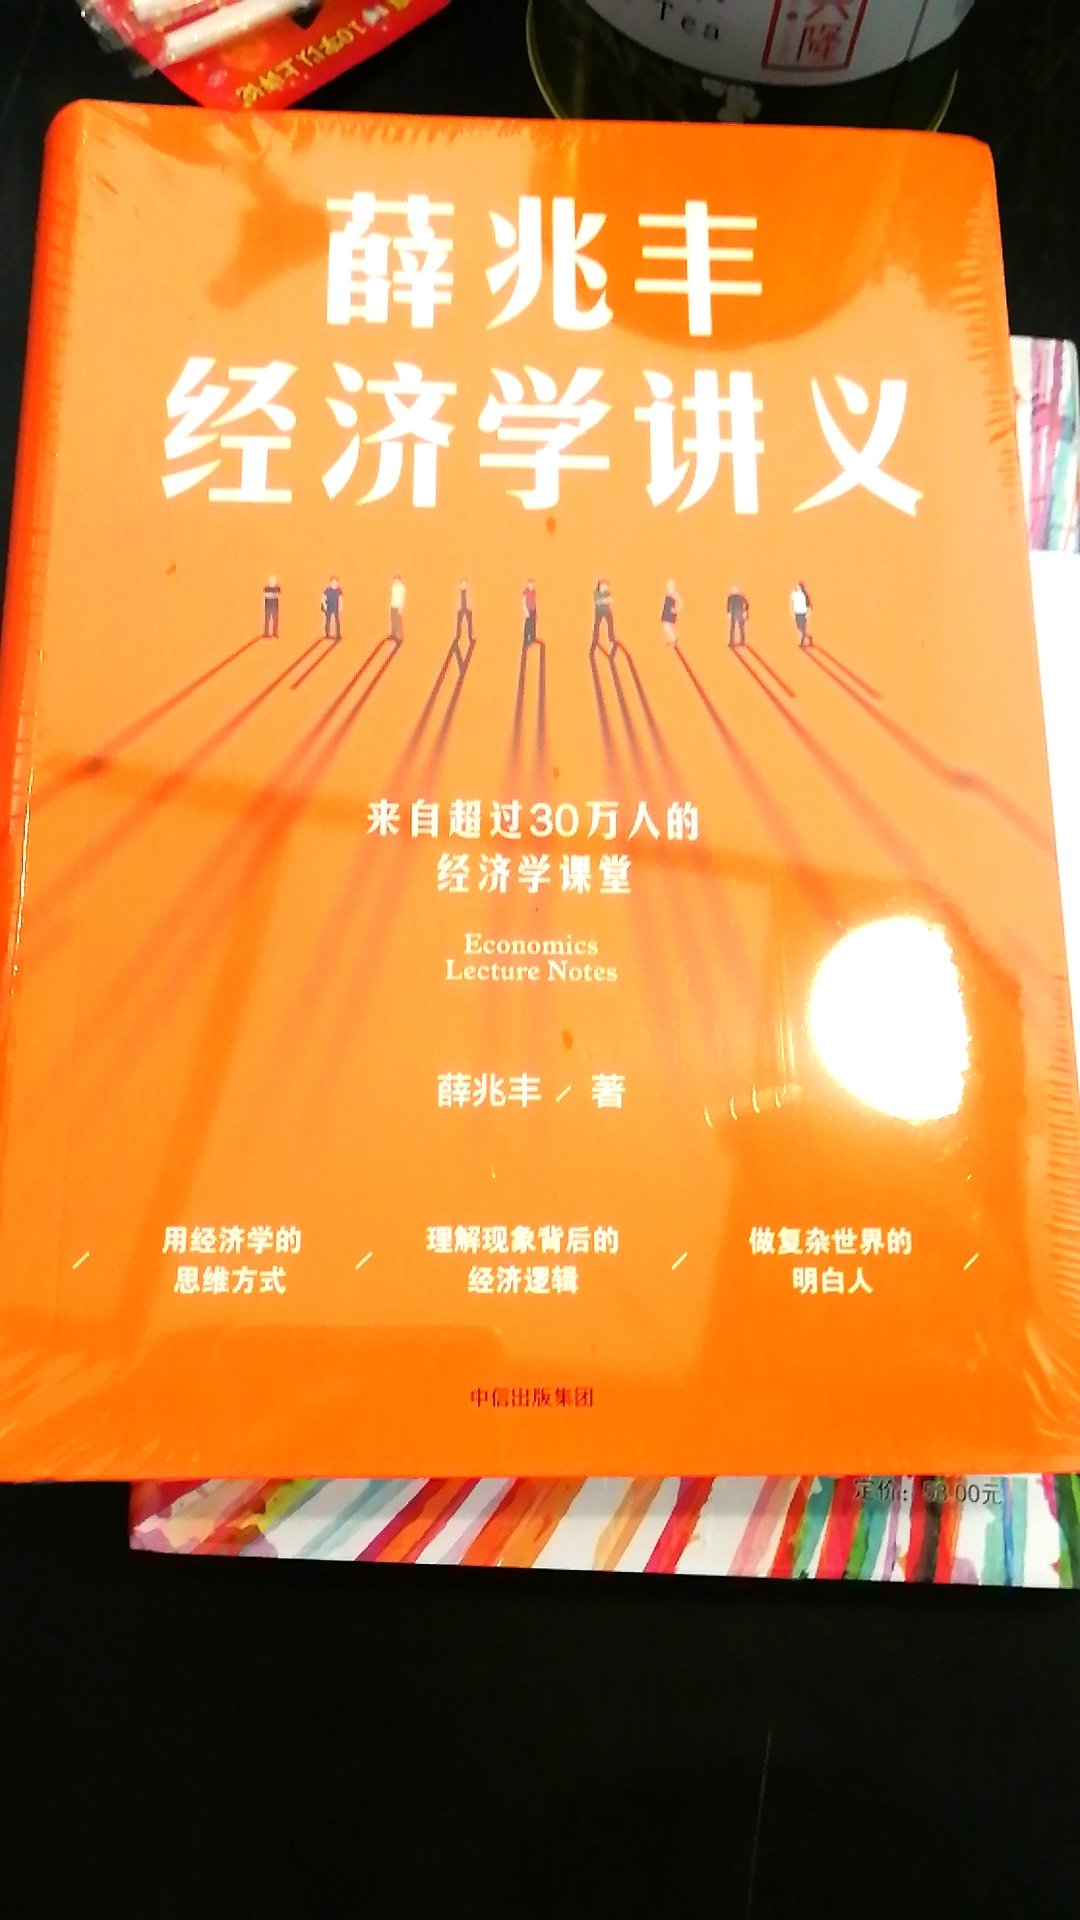 从奇葩书上认知了薛兆丰教授，觉得他的经济学解答很有意思，看到这边书就不犹豫买下来了，恭读，恭读。